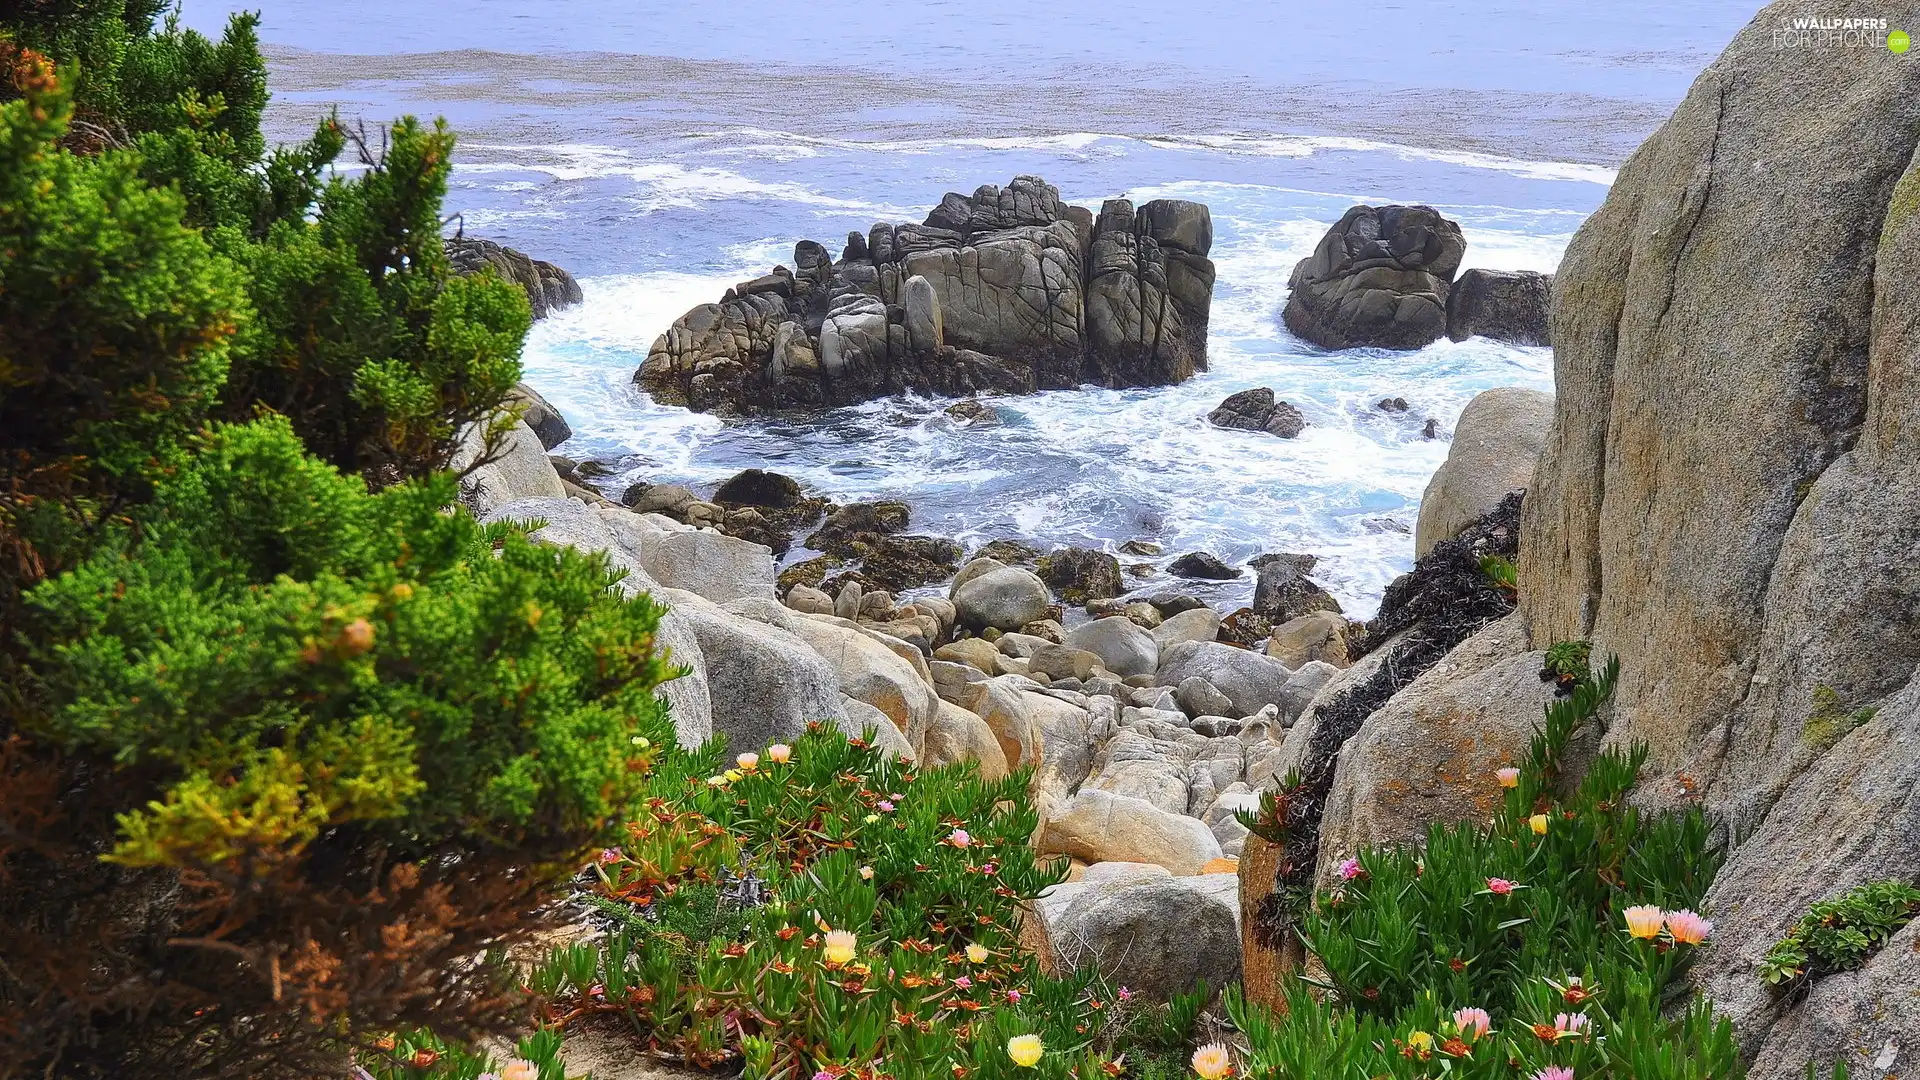 Stones, Bush, Waves, rocks, sea